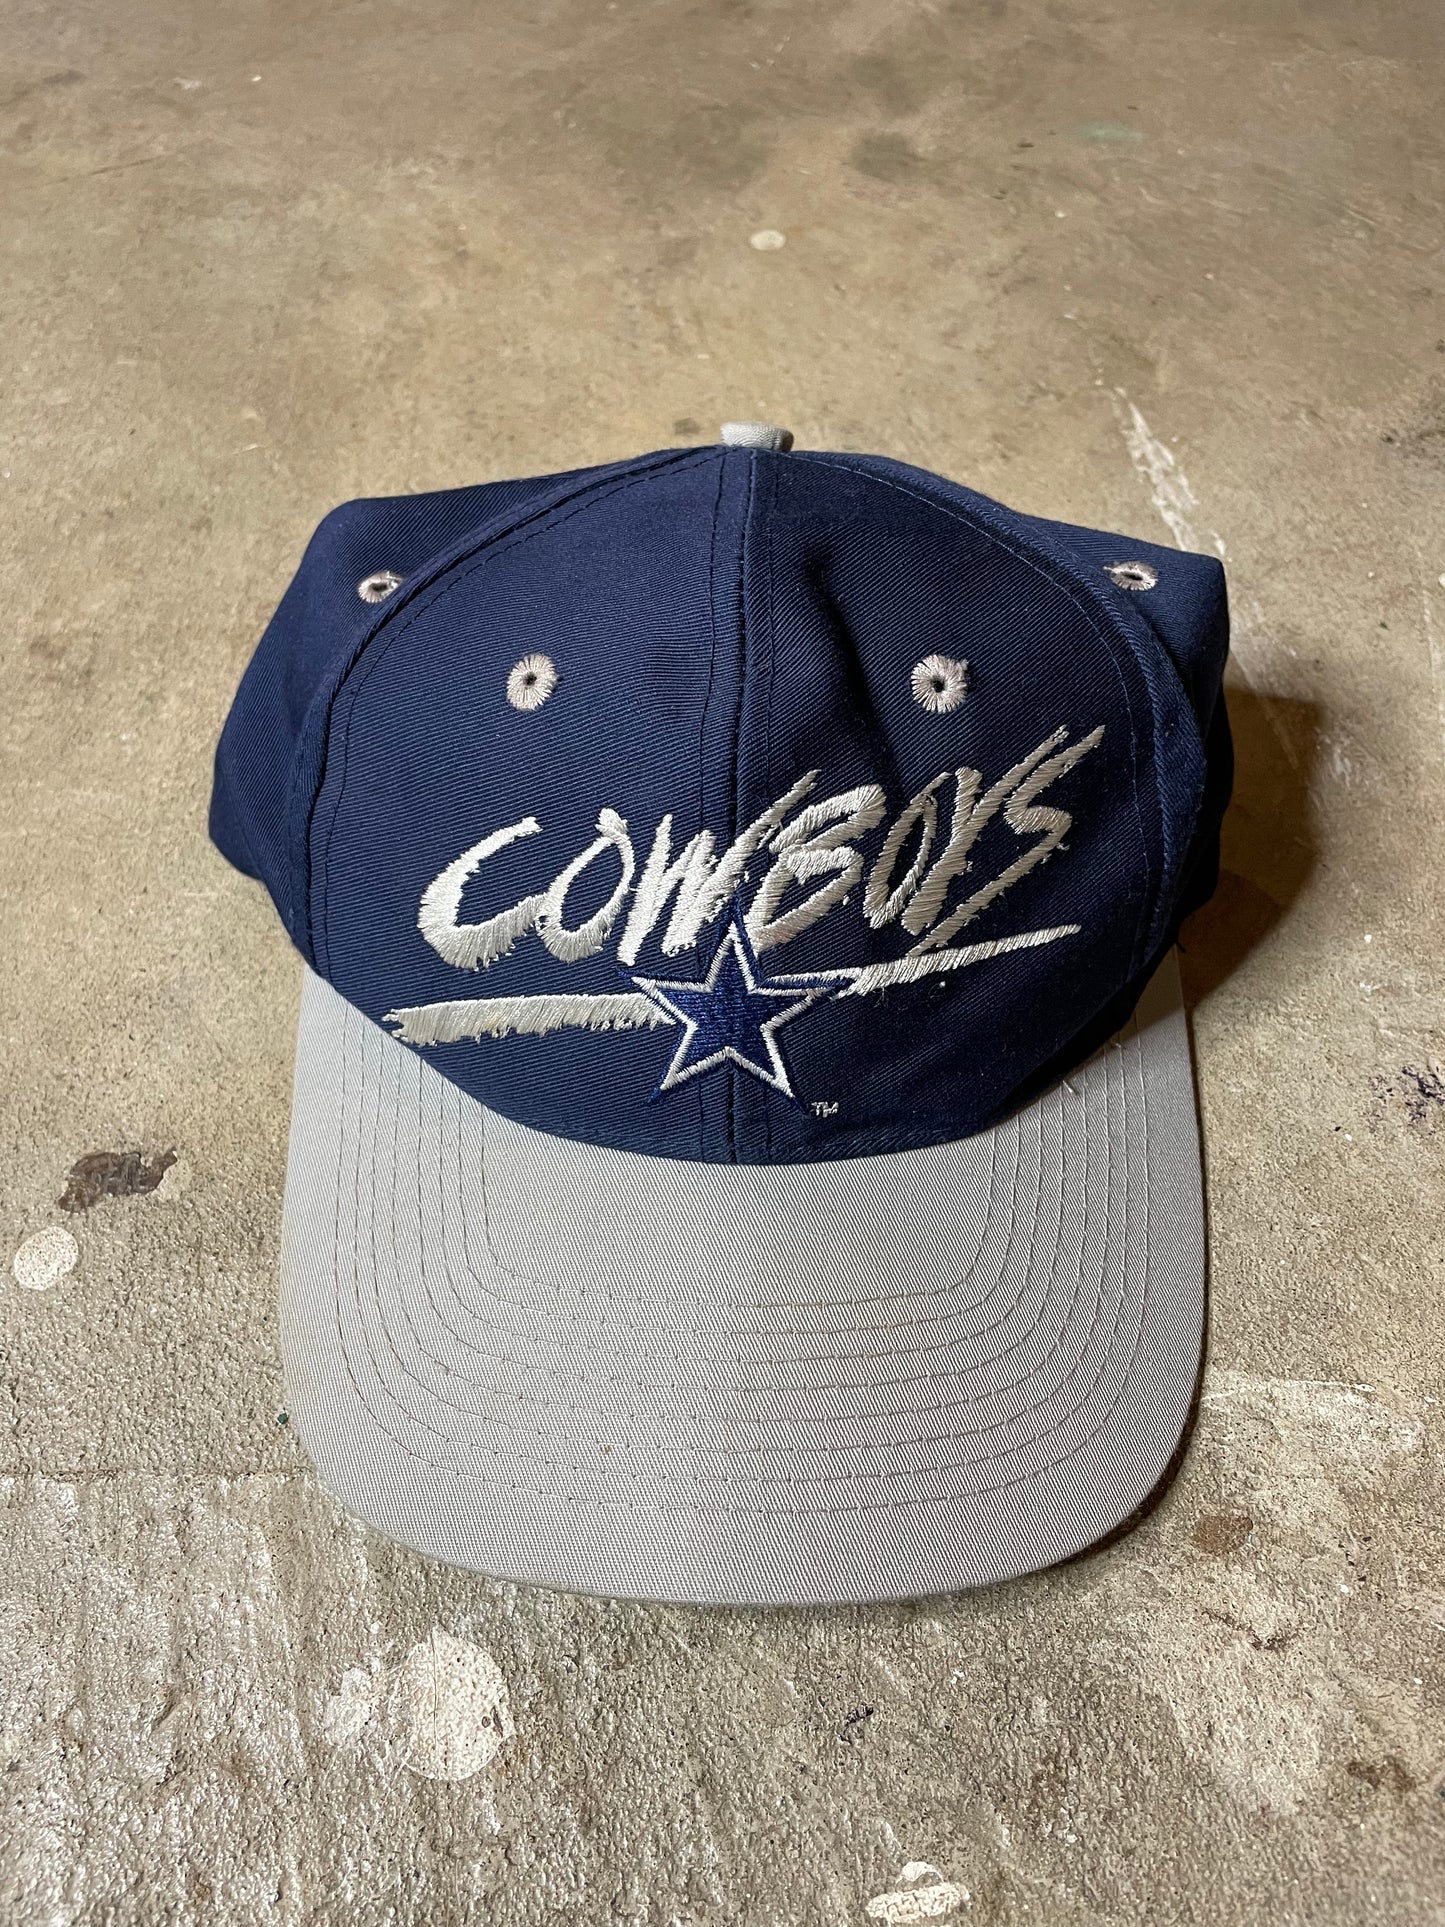 1990s Dallas Cowboys Snapback